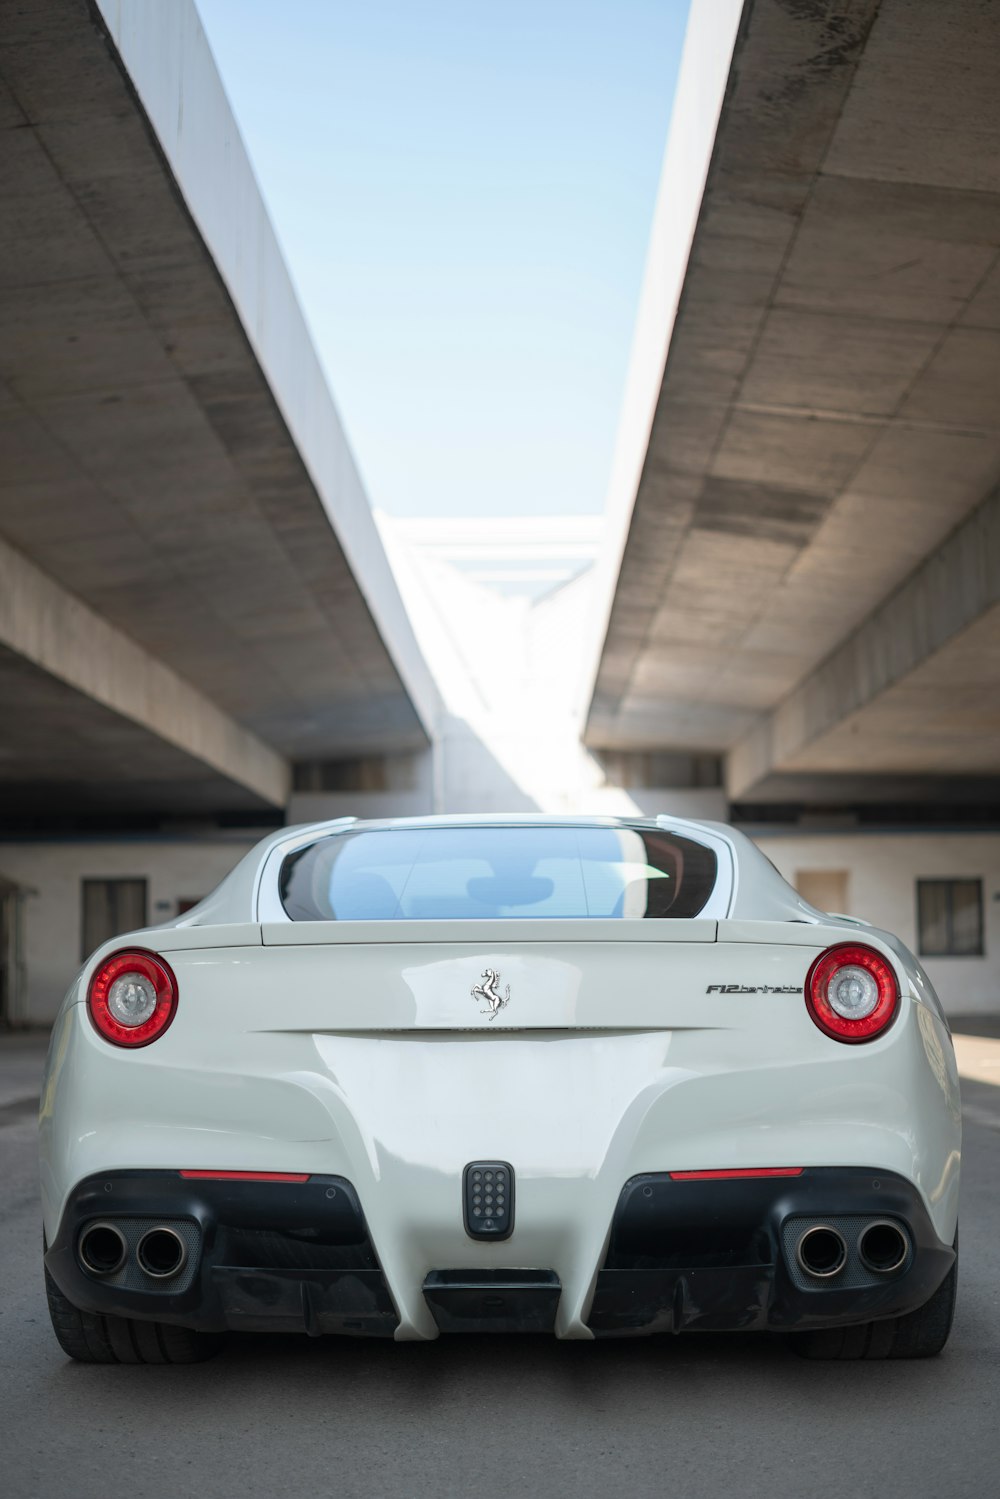 weißes Ferrari-Fahrzeug unter Brücke geparkt